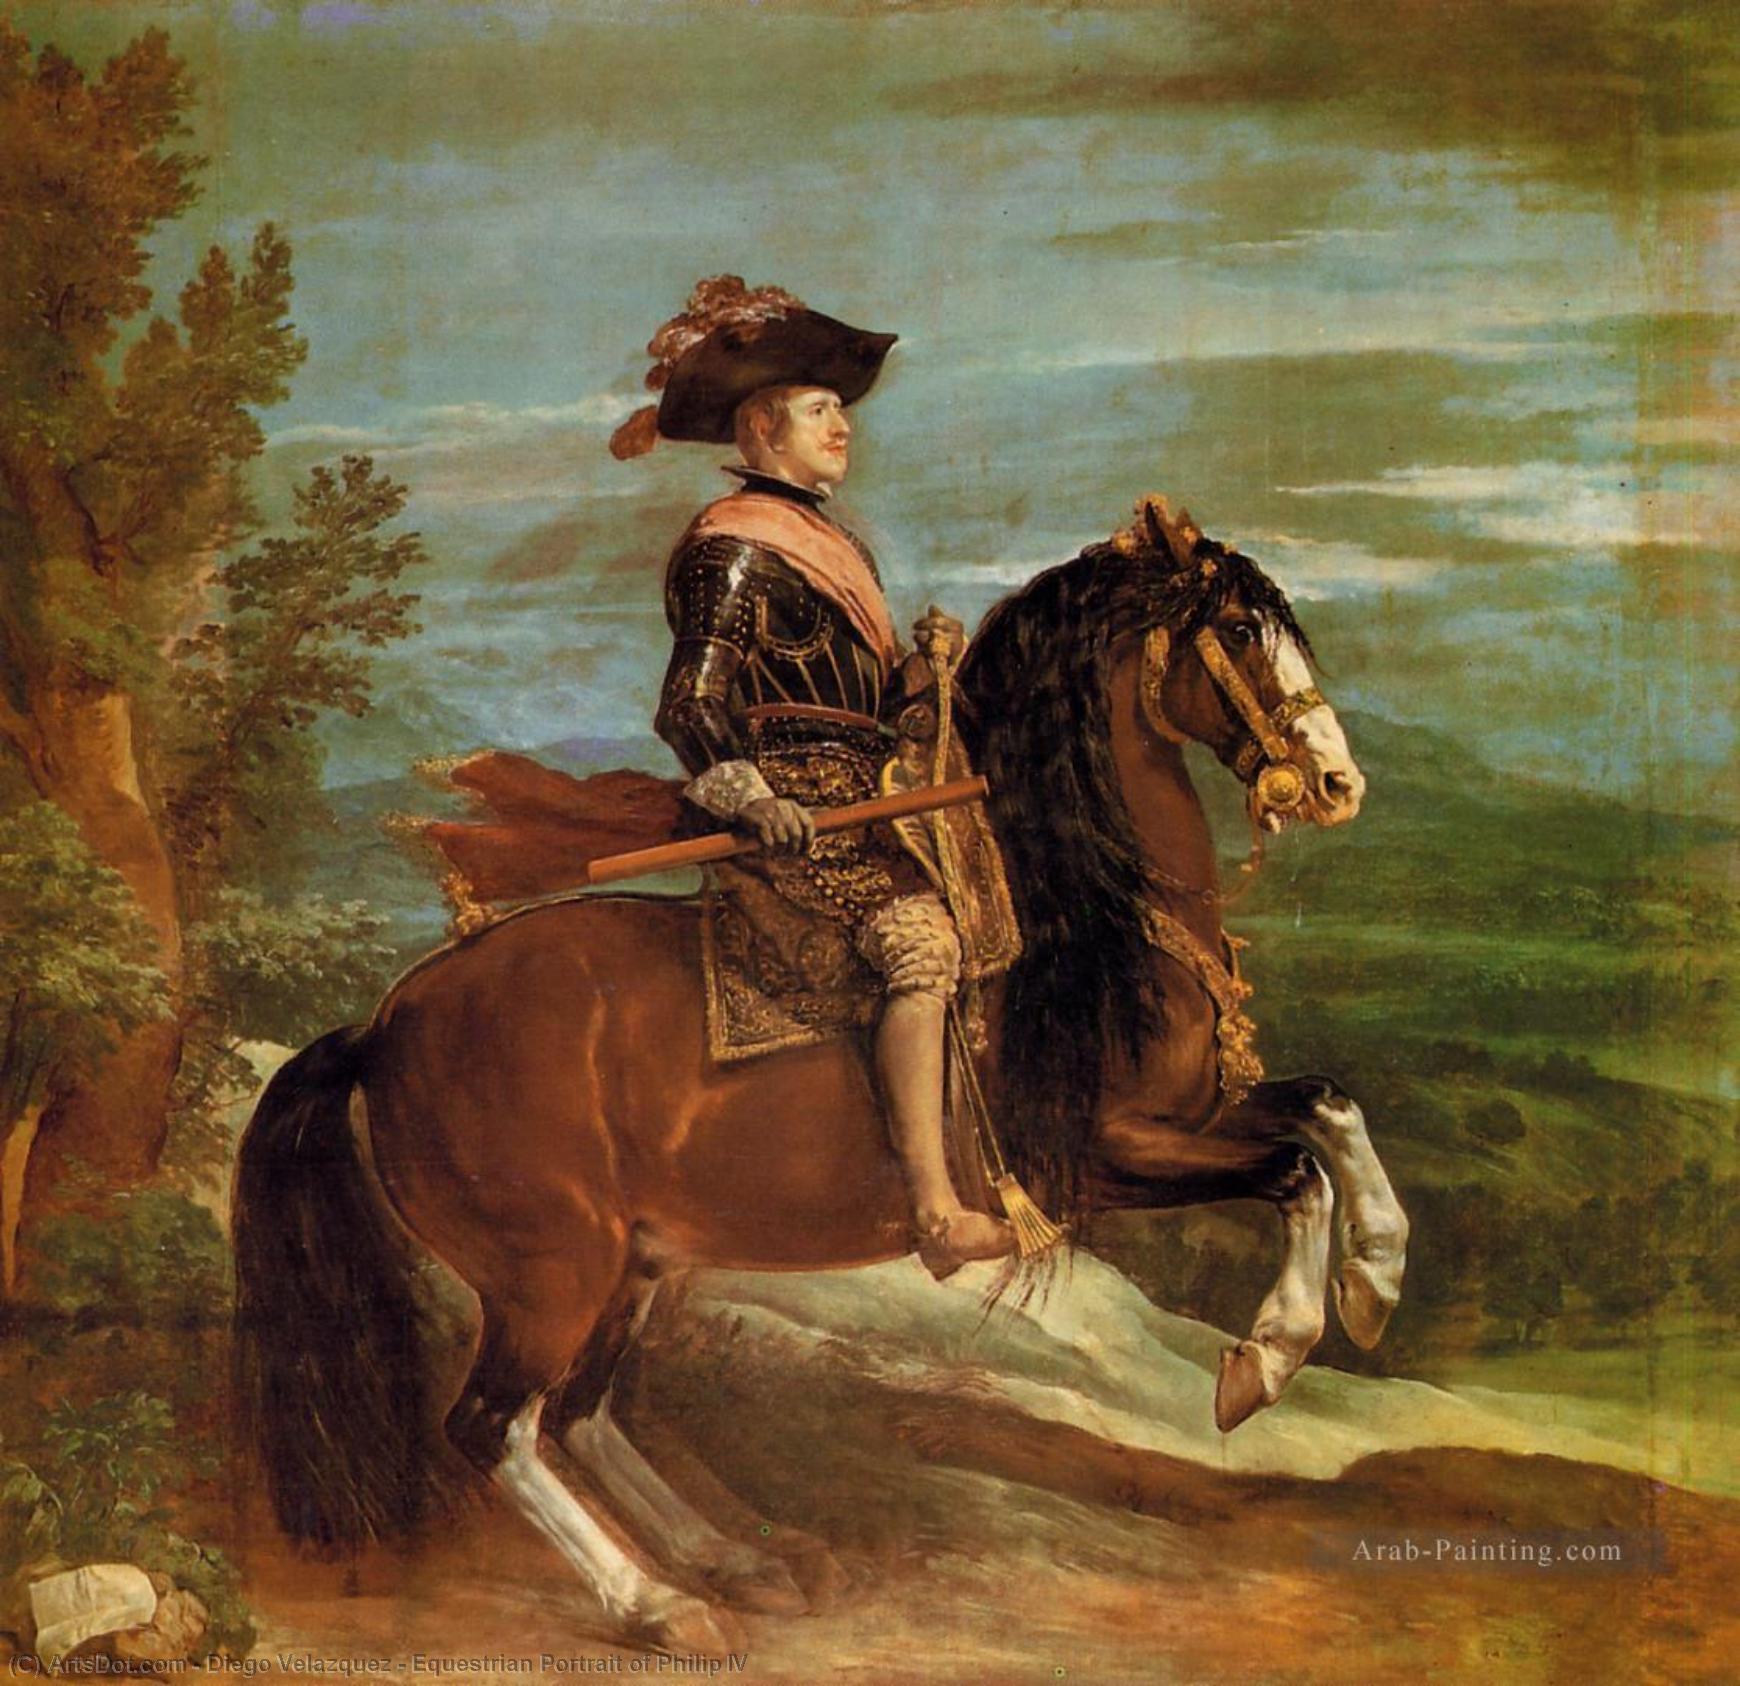 WikiOO.org - Enciclopédia das Belas Artes - Pintura, Arte por Diego Velazquez - Equestrian Portrait of Philip IV